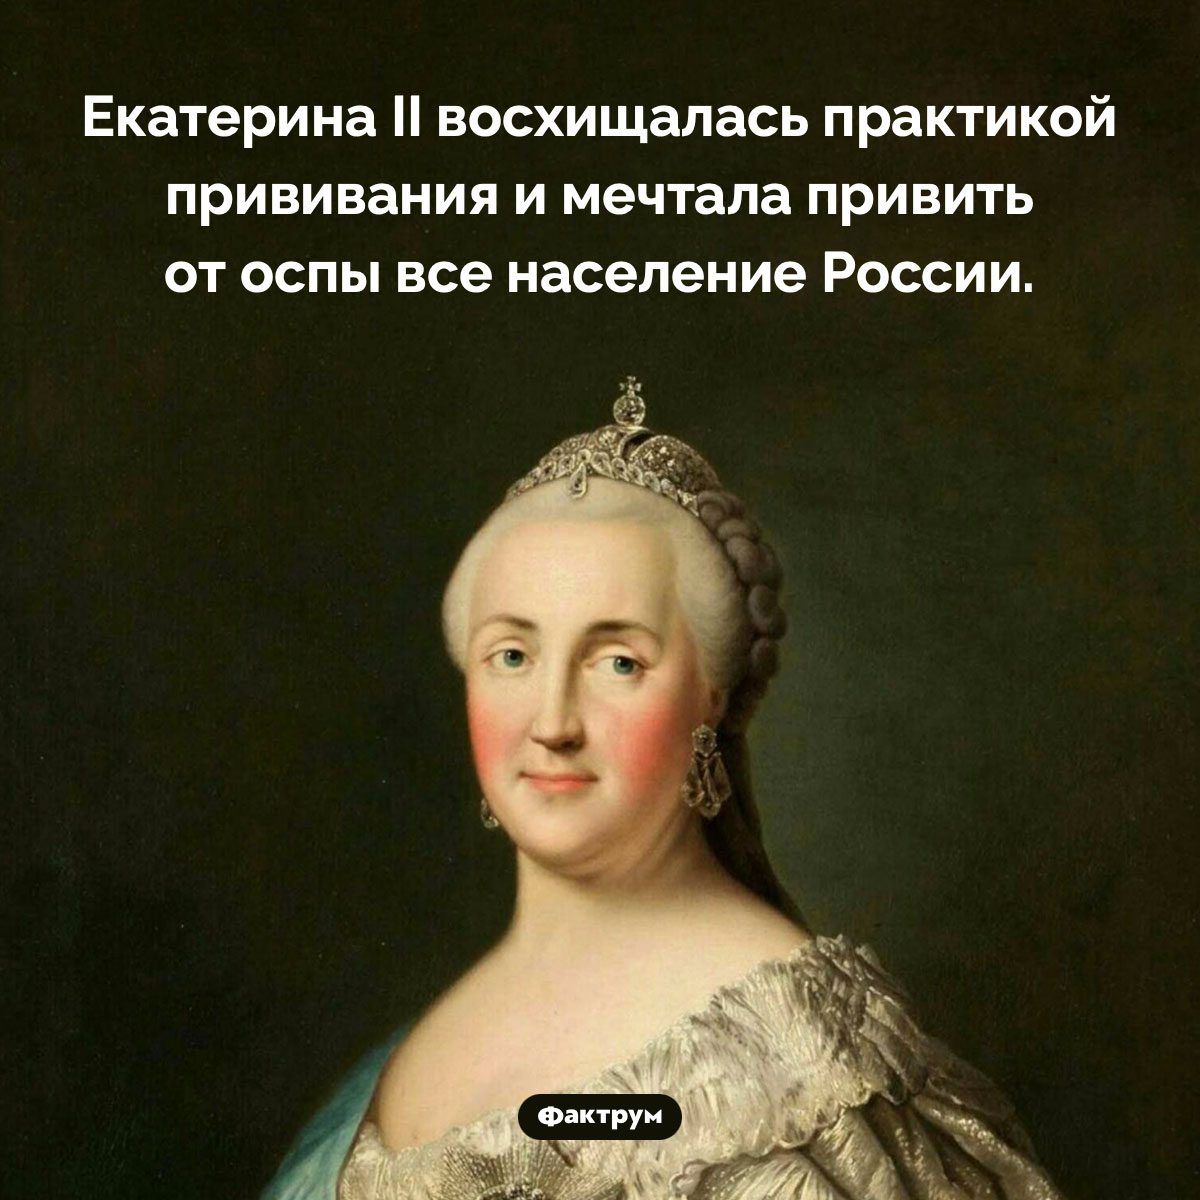 Екатерина II восхищалась прививками